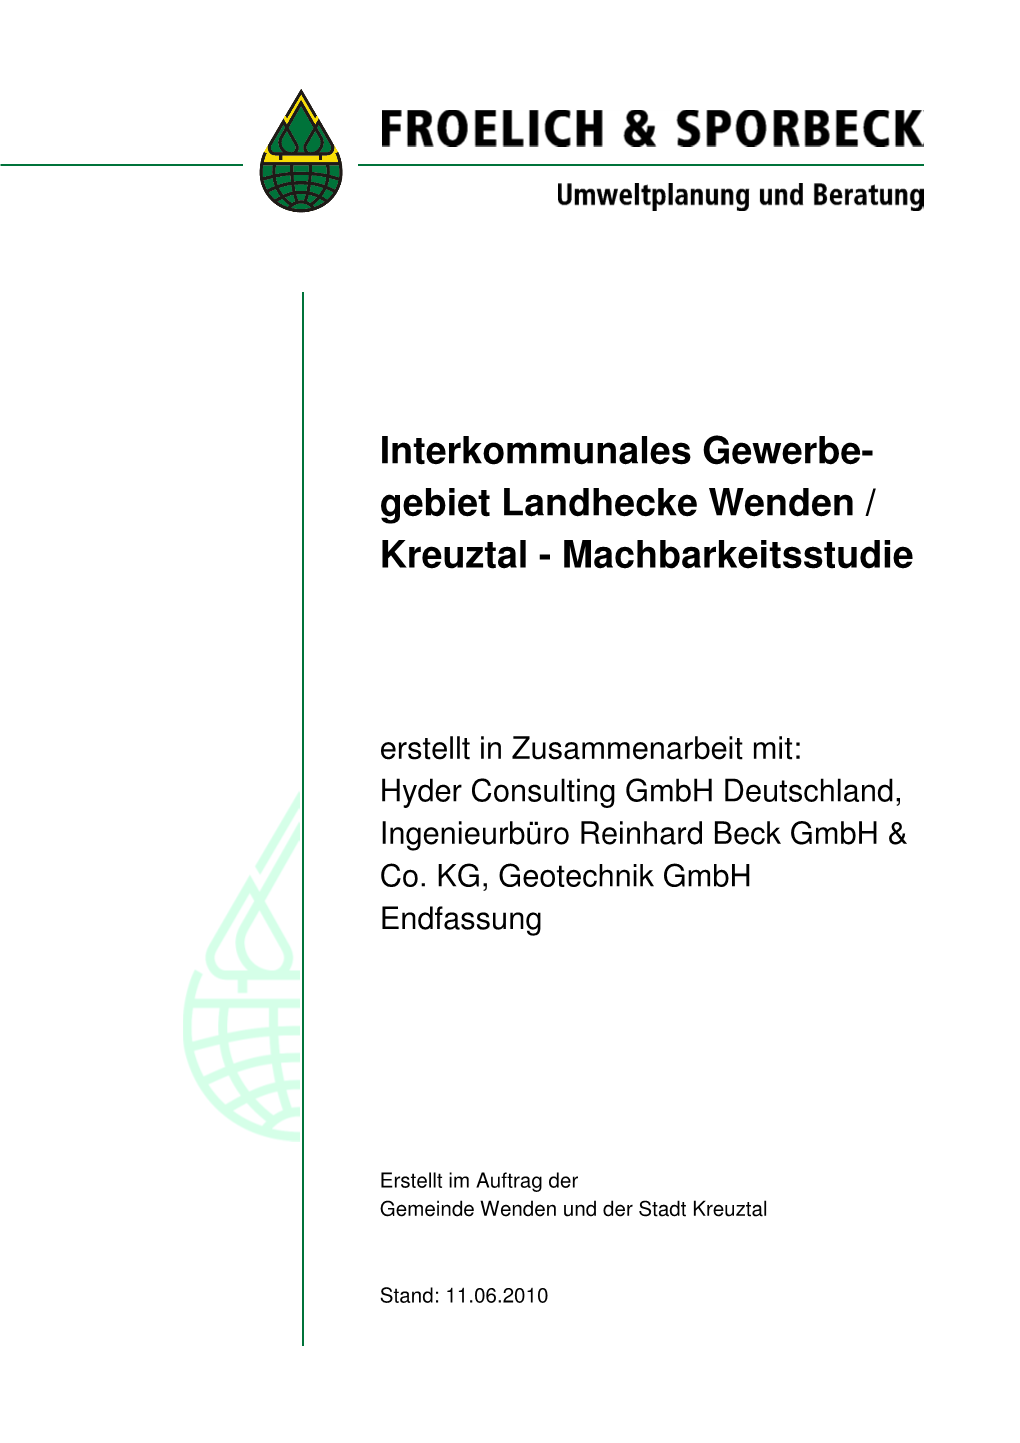 Interkommunales Gewerbe- Gebiet Landhecke Wenden / Kreuztal - Machbarkeitsstudie